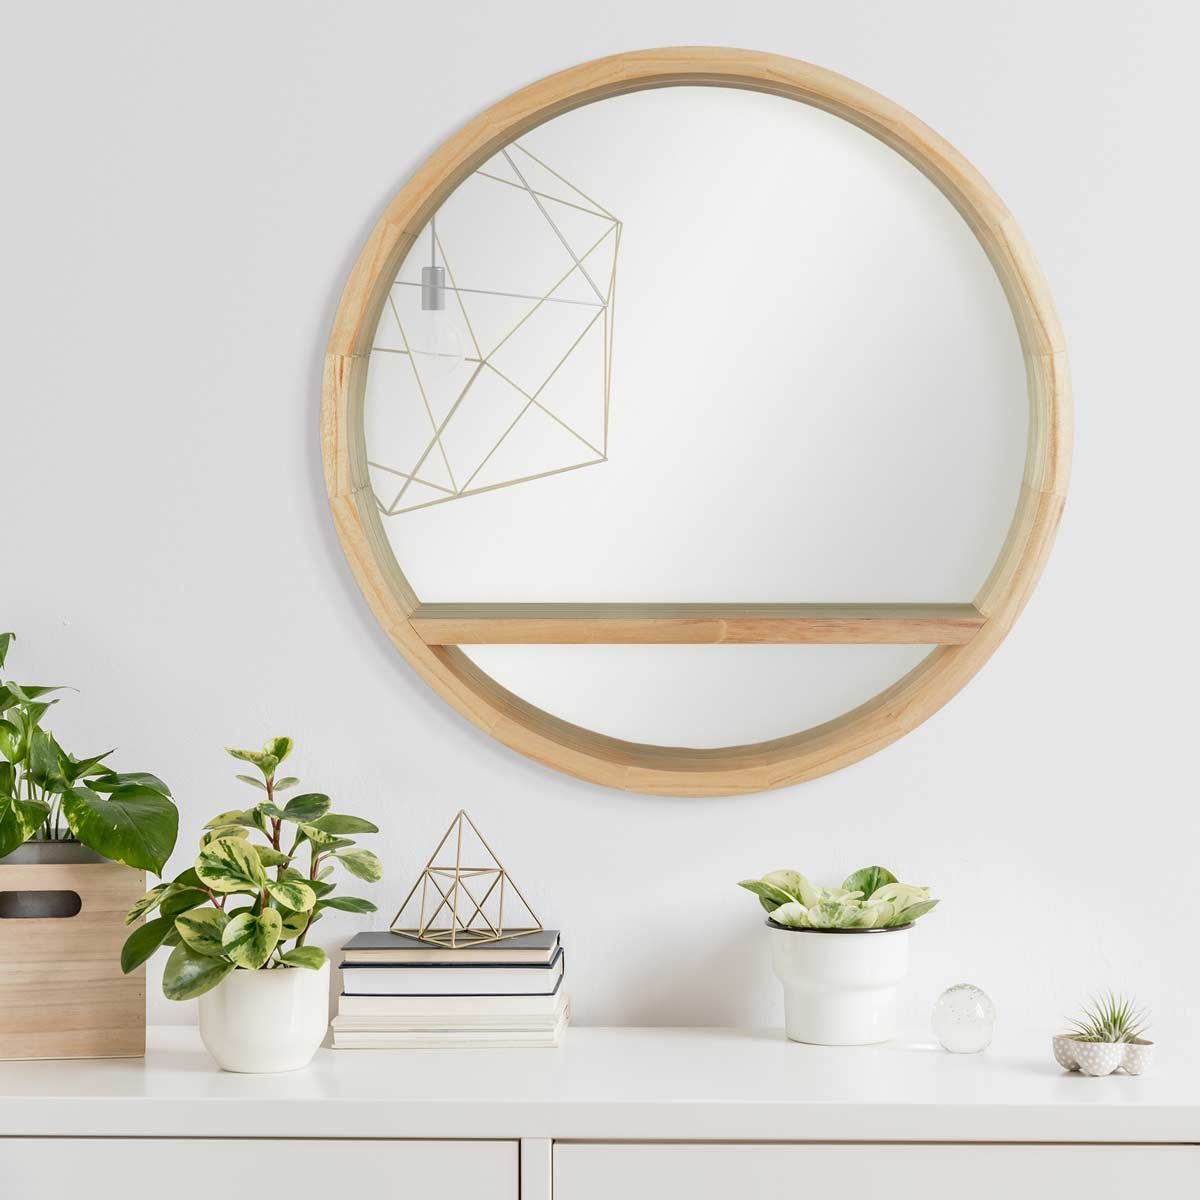 PHOTOLINI Spiegel mit Holzrahmen Naturholz Ablagefläche, Wandspiegel und praktischer